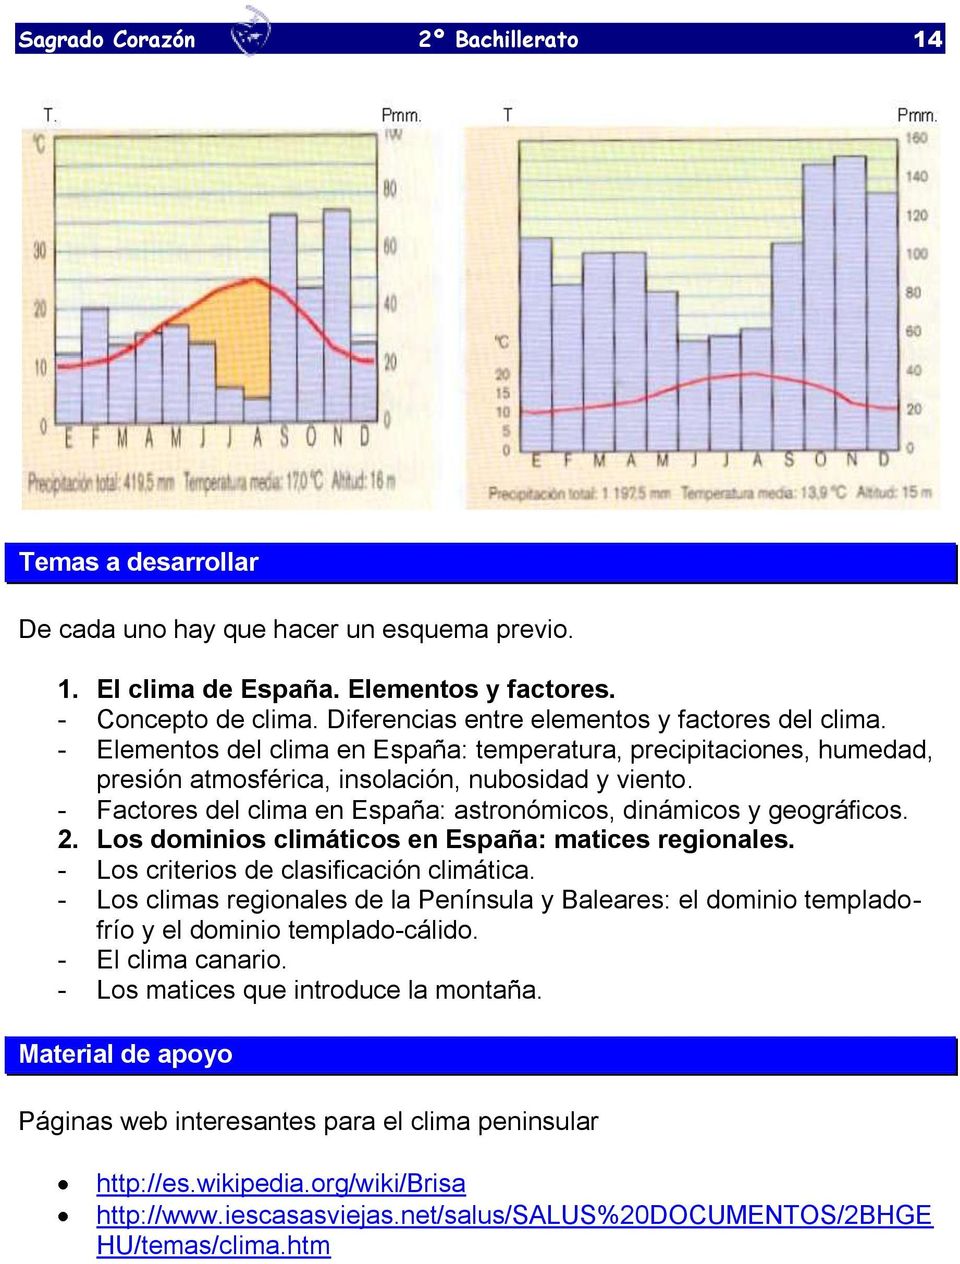 - Factores del clima en España: astronómicos, dinámicos y geográficos. 2. Los dominios climáticos en España: matices regionales. - Los criterios de clasificación climática.